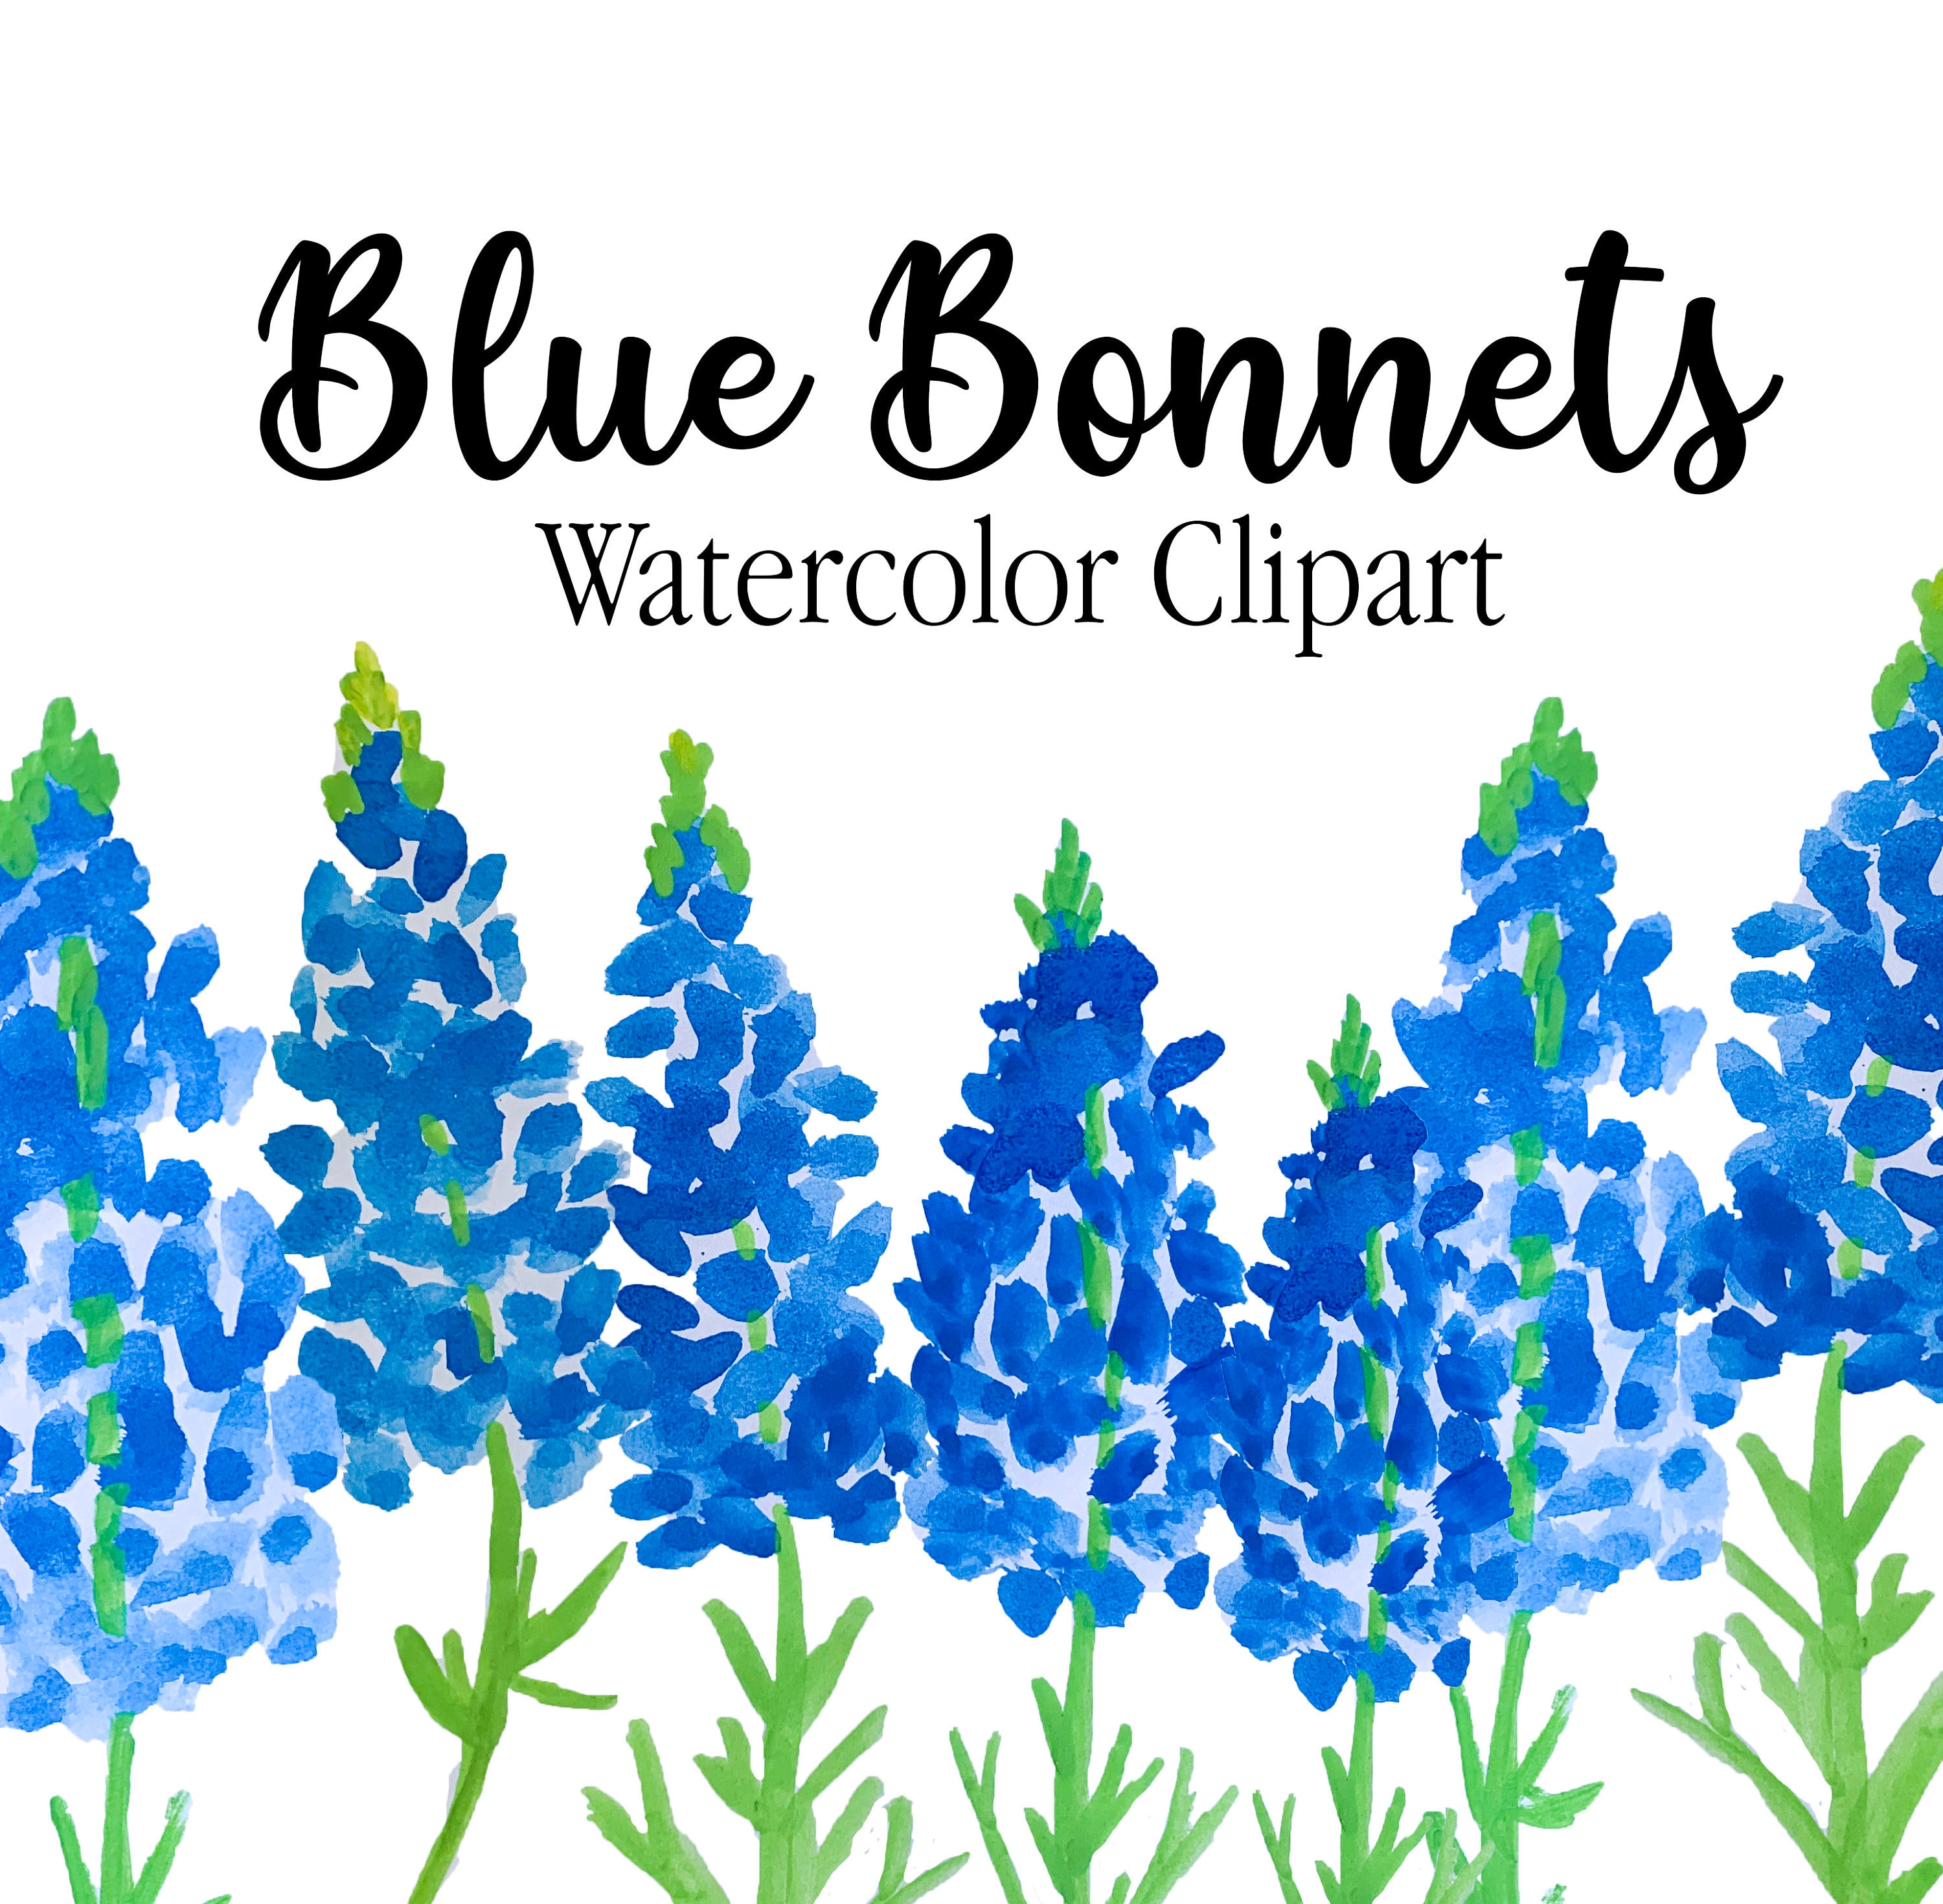 Bluebonnets Acquerello Clipart - Texas Stato Fiore, Clipart di fiori selvat...